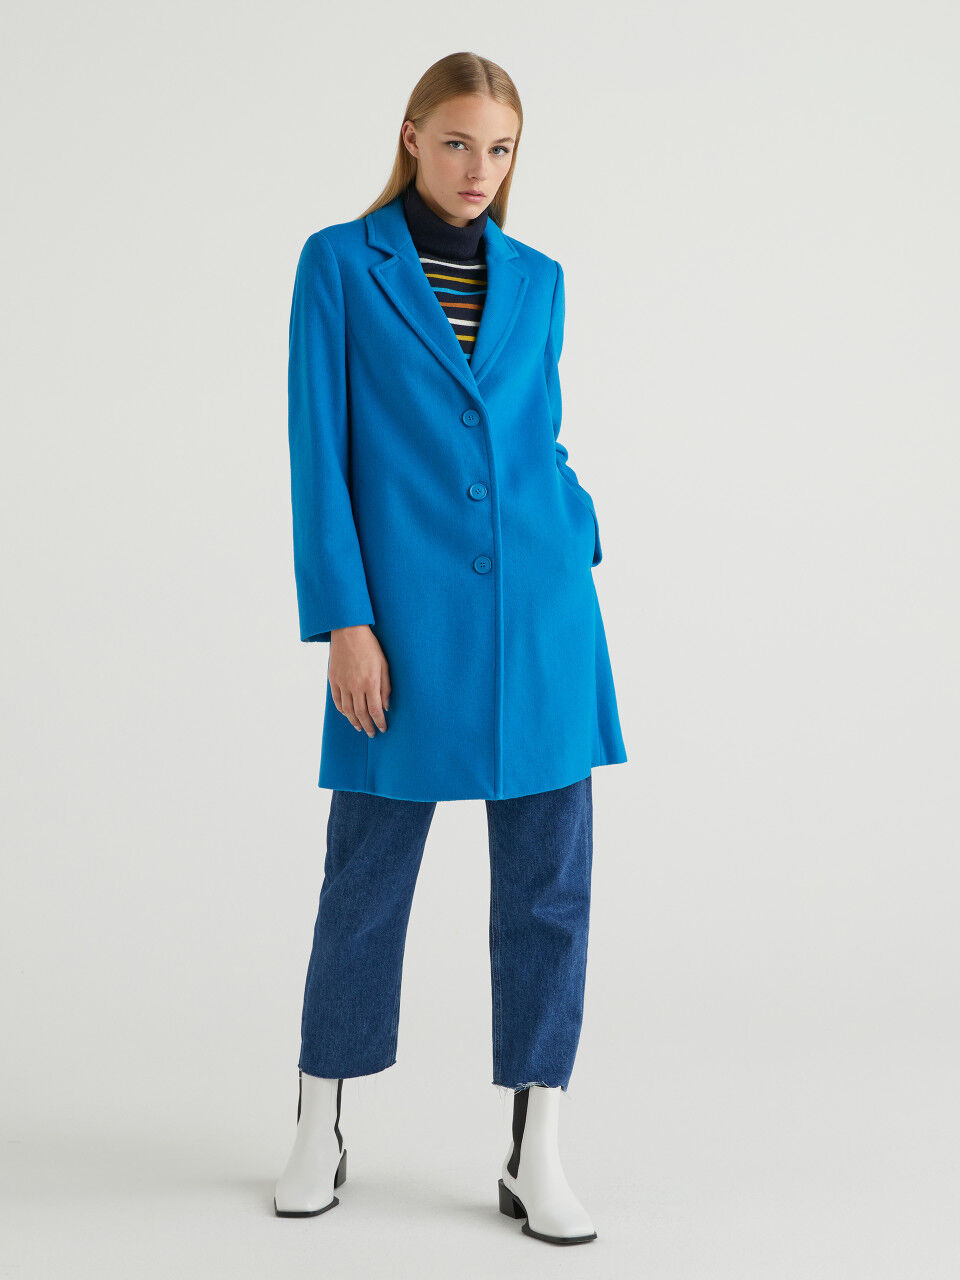 REMIXANCE Long coat Blue 38                  EU discount 48% WOMEN FASHION Coats Cloth 